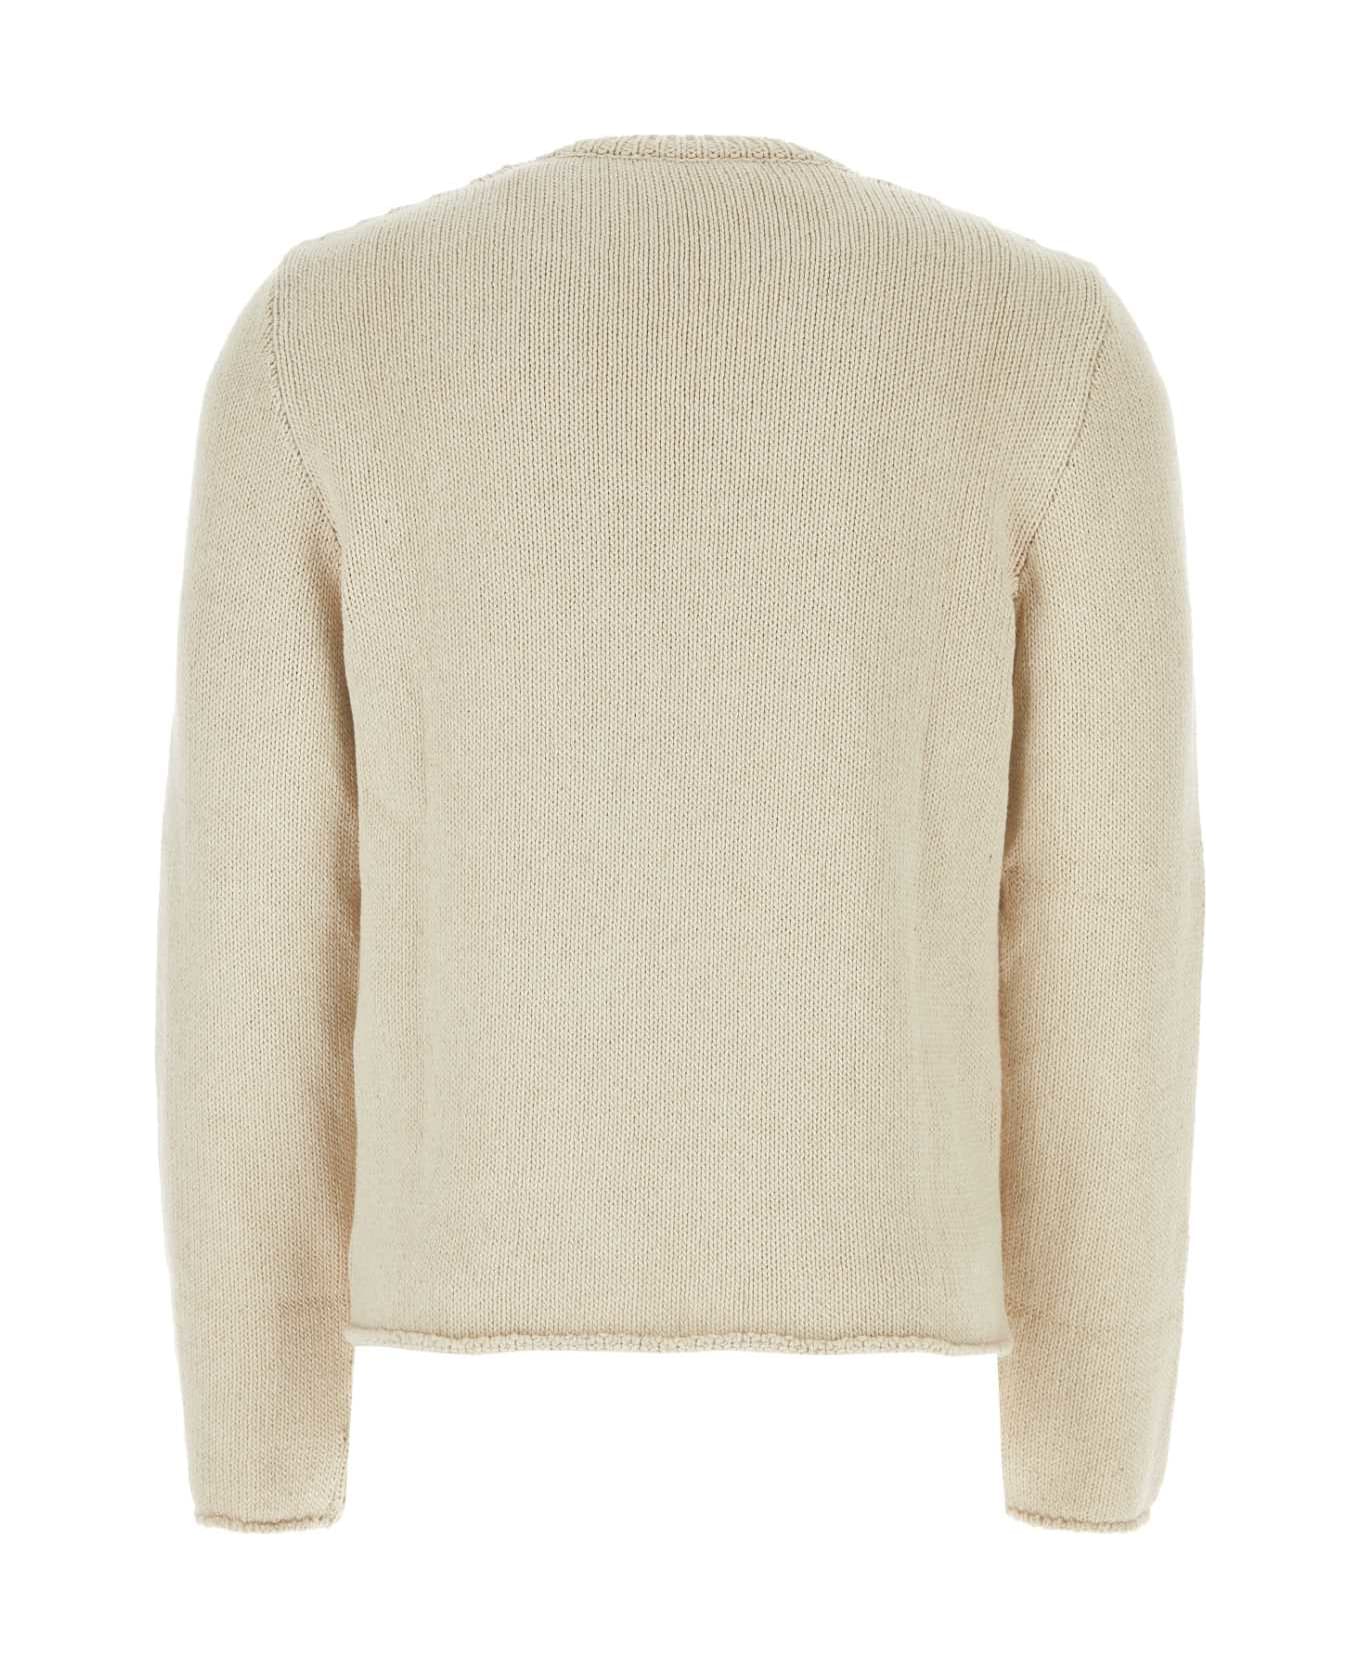 Courrèges Sand Cotton Blend Sweater - OATMETAL